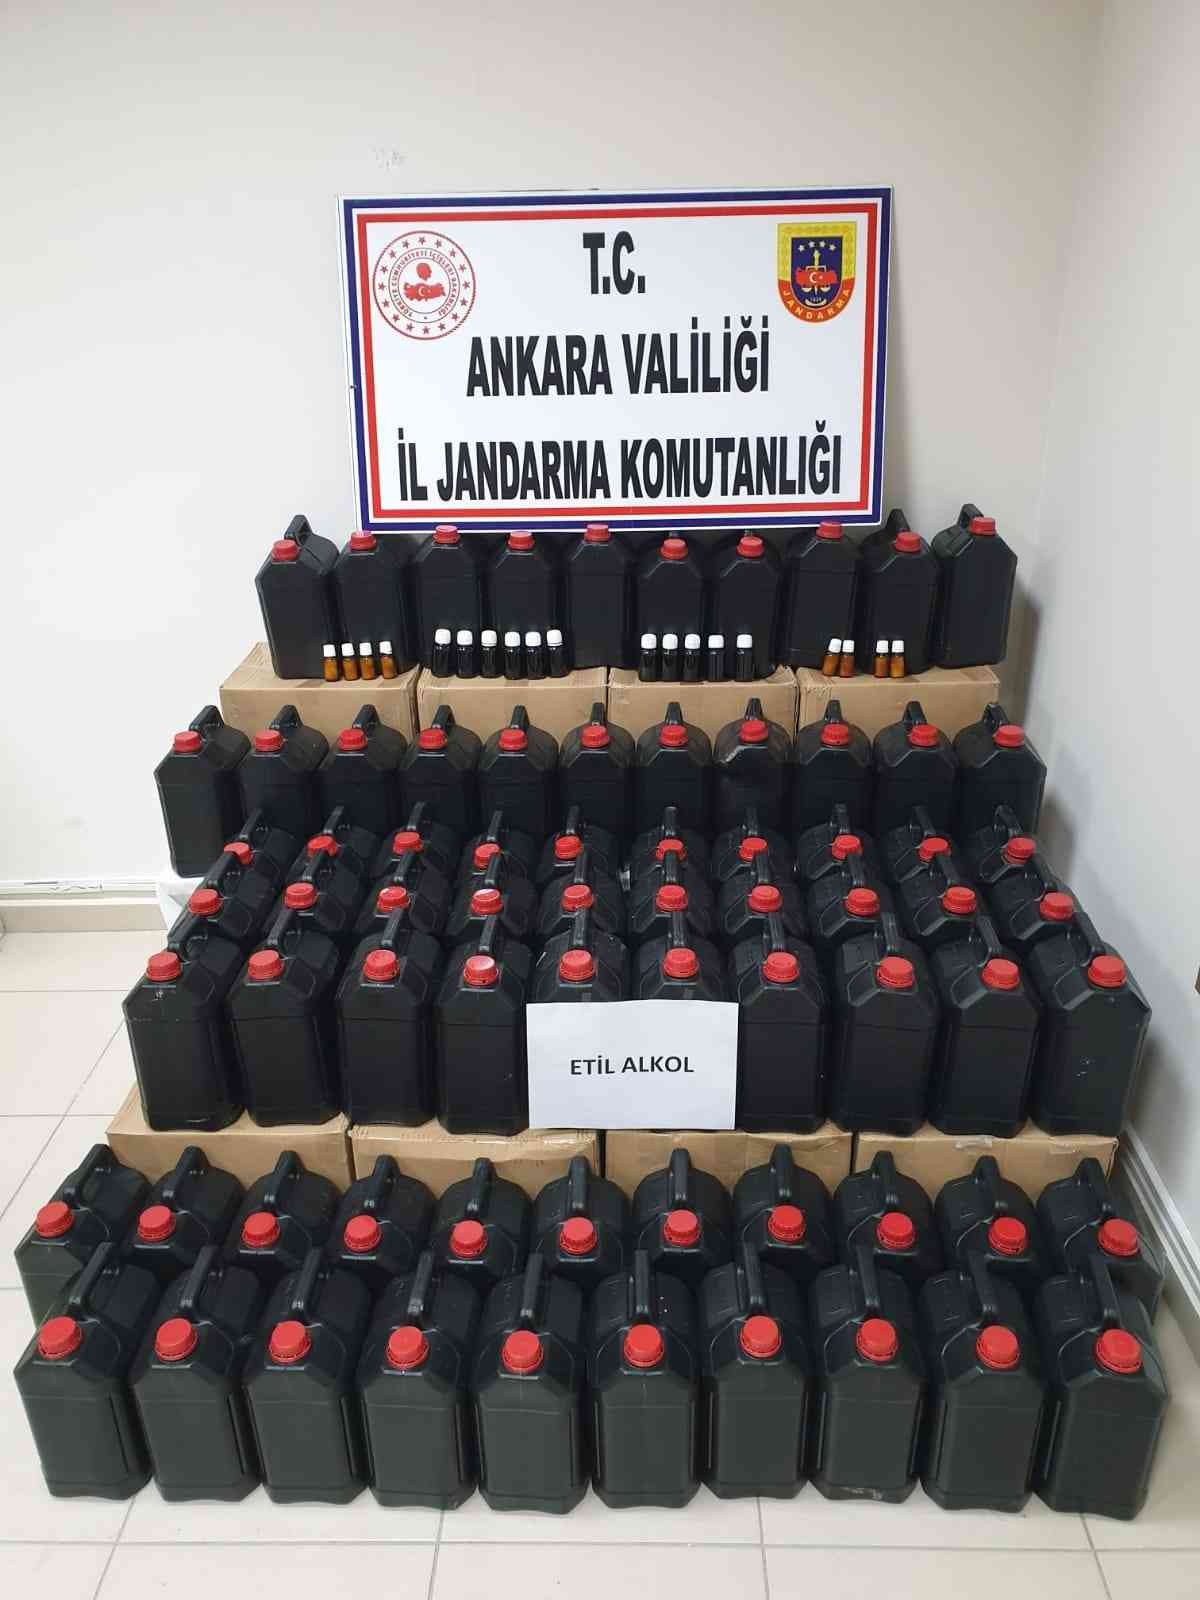 Ankara’da 360 litre etil alkol ele geçirildi #ankara